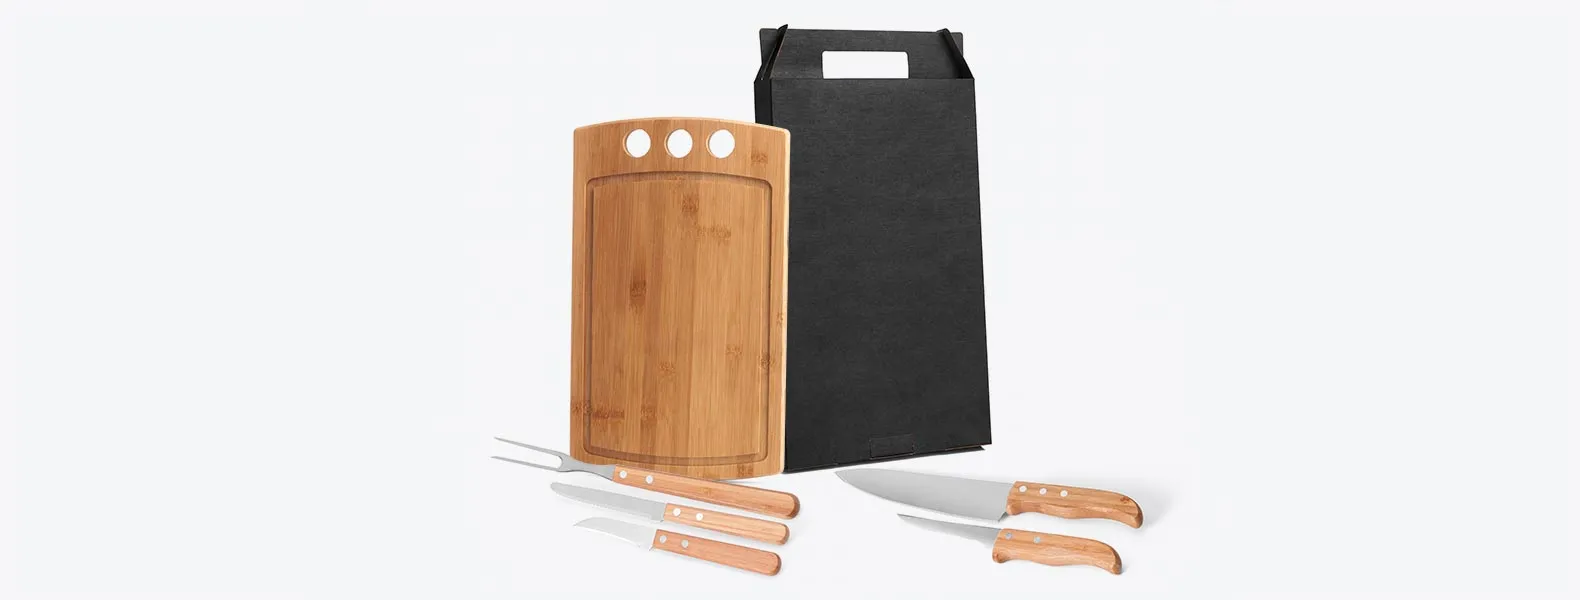 Kit composto por uma tábua retangular em tripla camada invertida de Bambu com três furos e sulco, e cinco peças com cabos em Bambu e lâminas em Aço Inox com rebites, sendo uma faca 8”, um garfo trinchante, uma faca 5” para desossar, uma faca 4” e uma faca 3”. Produto ecológico.